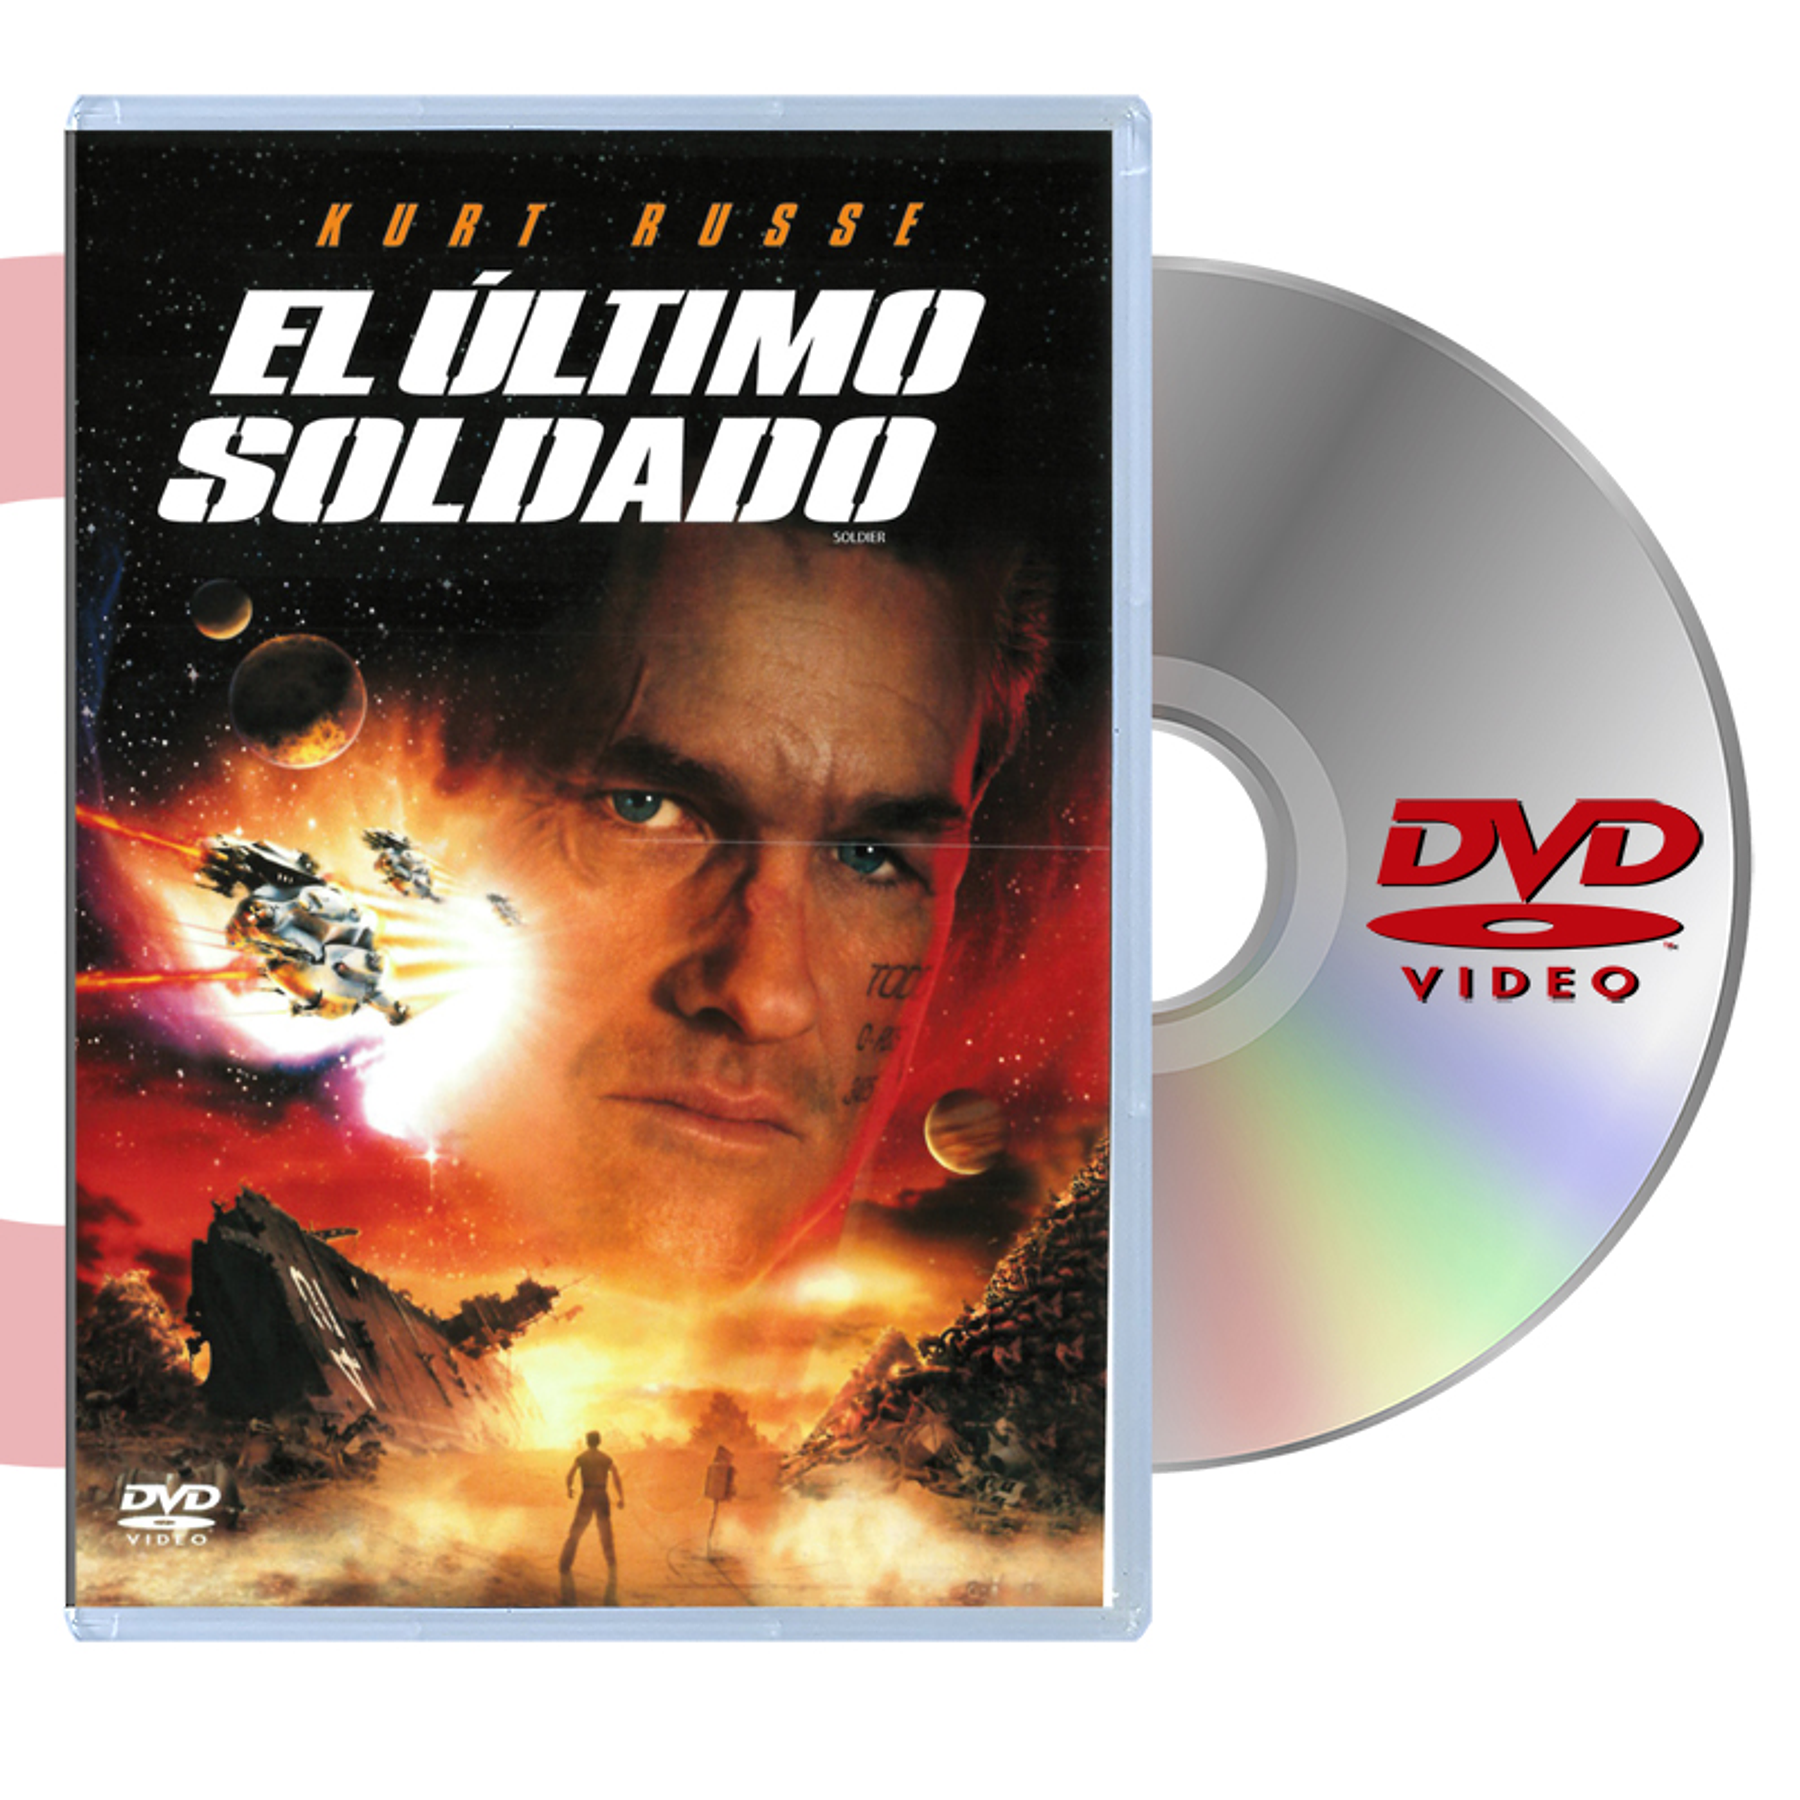 DVD EL ULTIMO SOLDADO